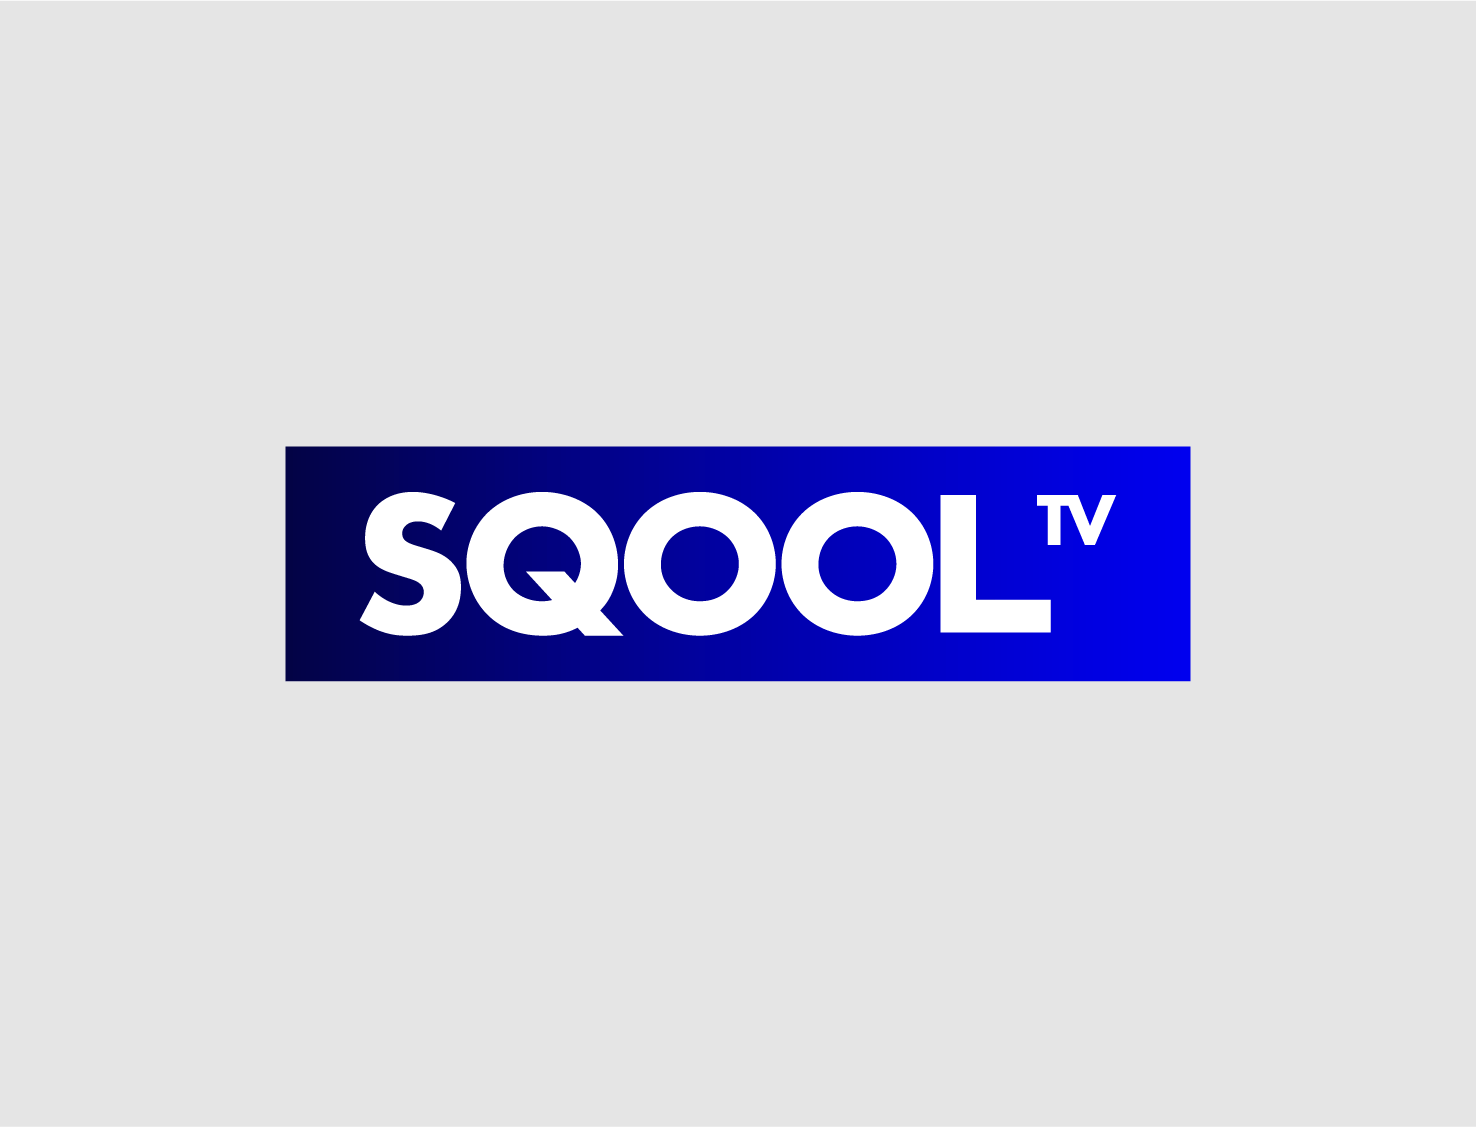 Sqool TV